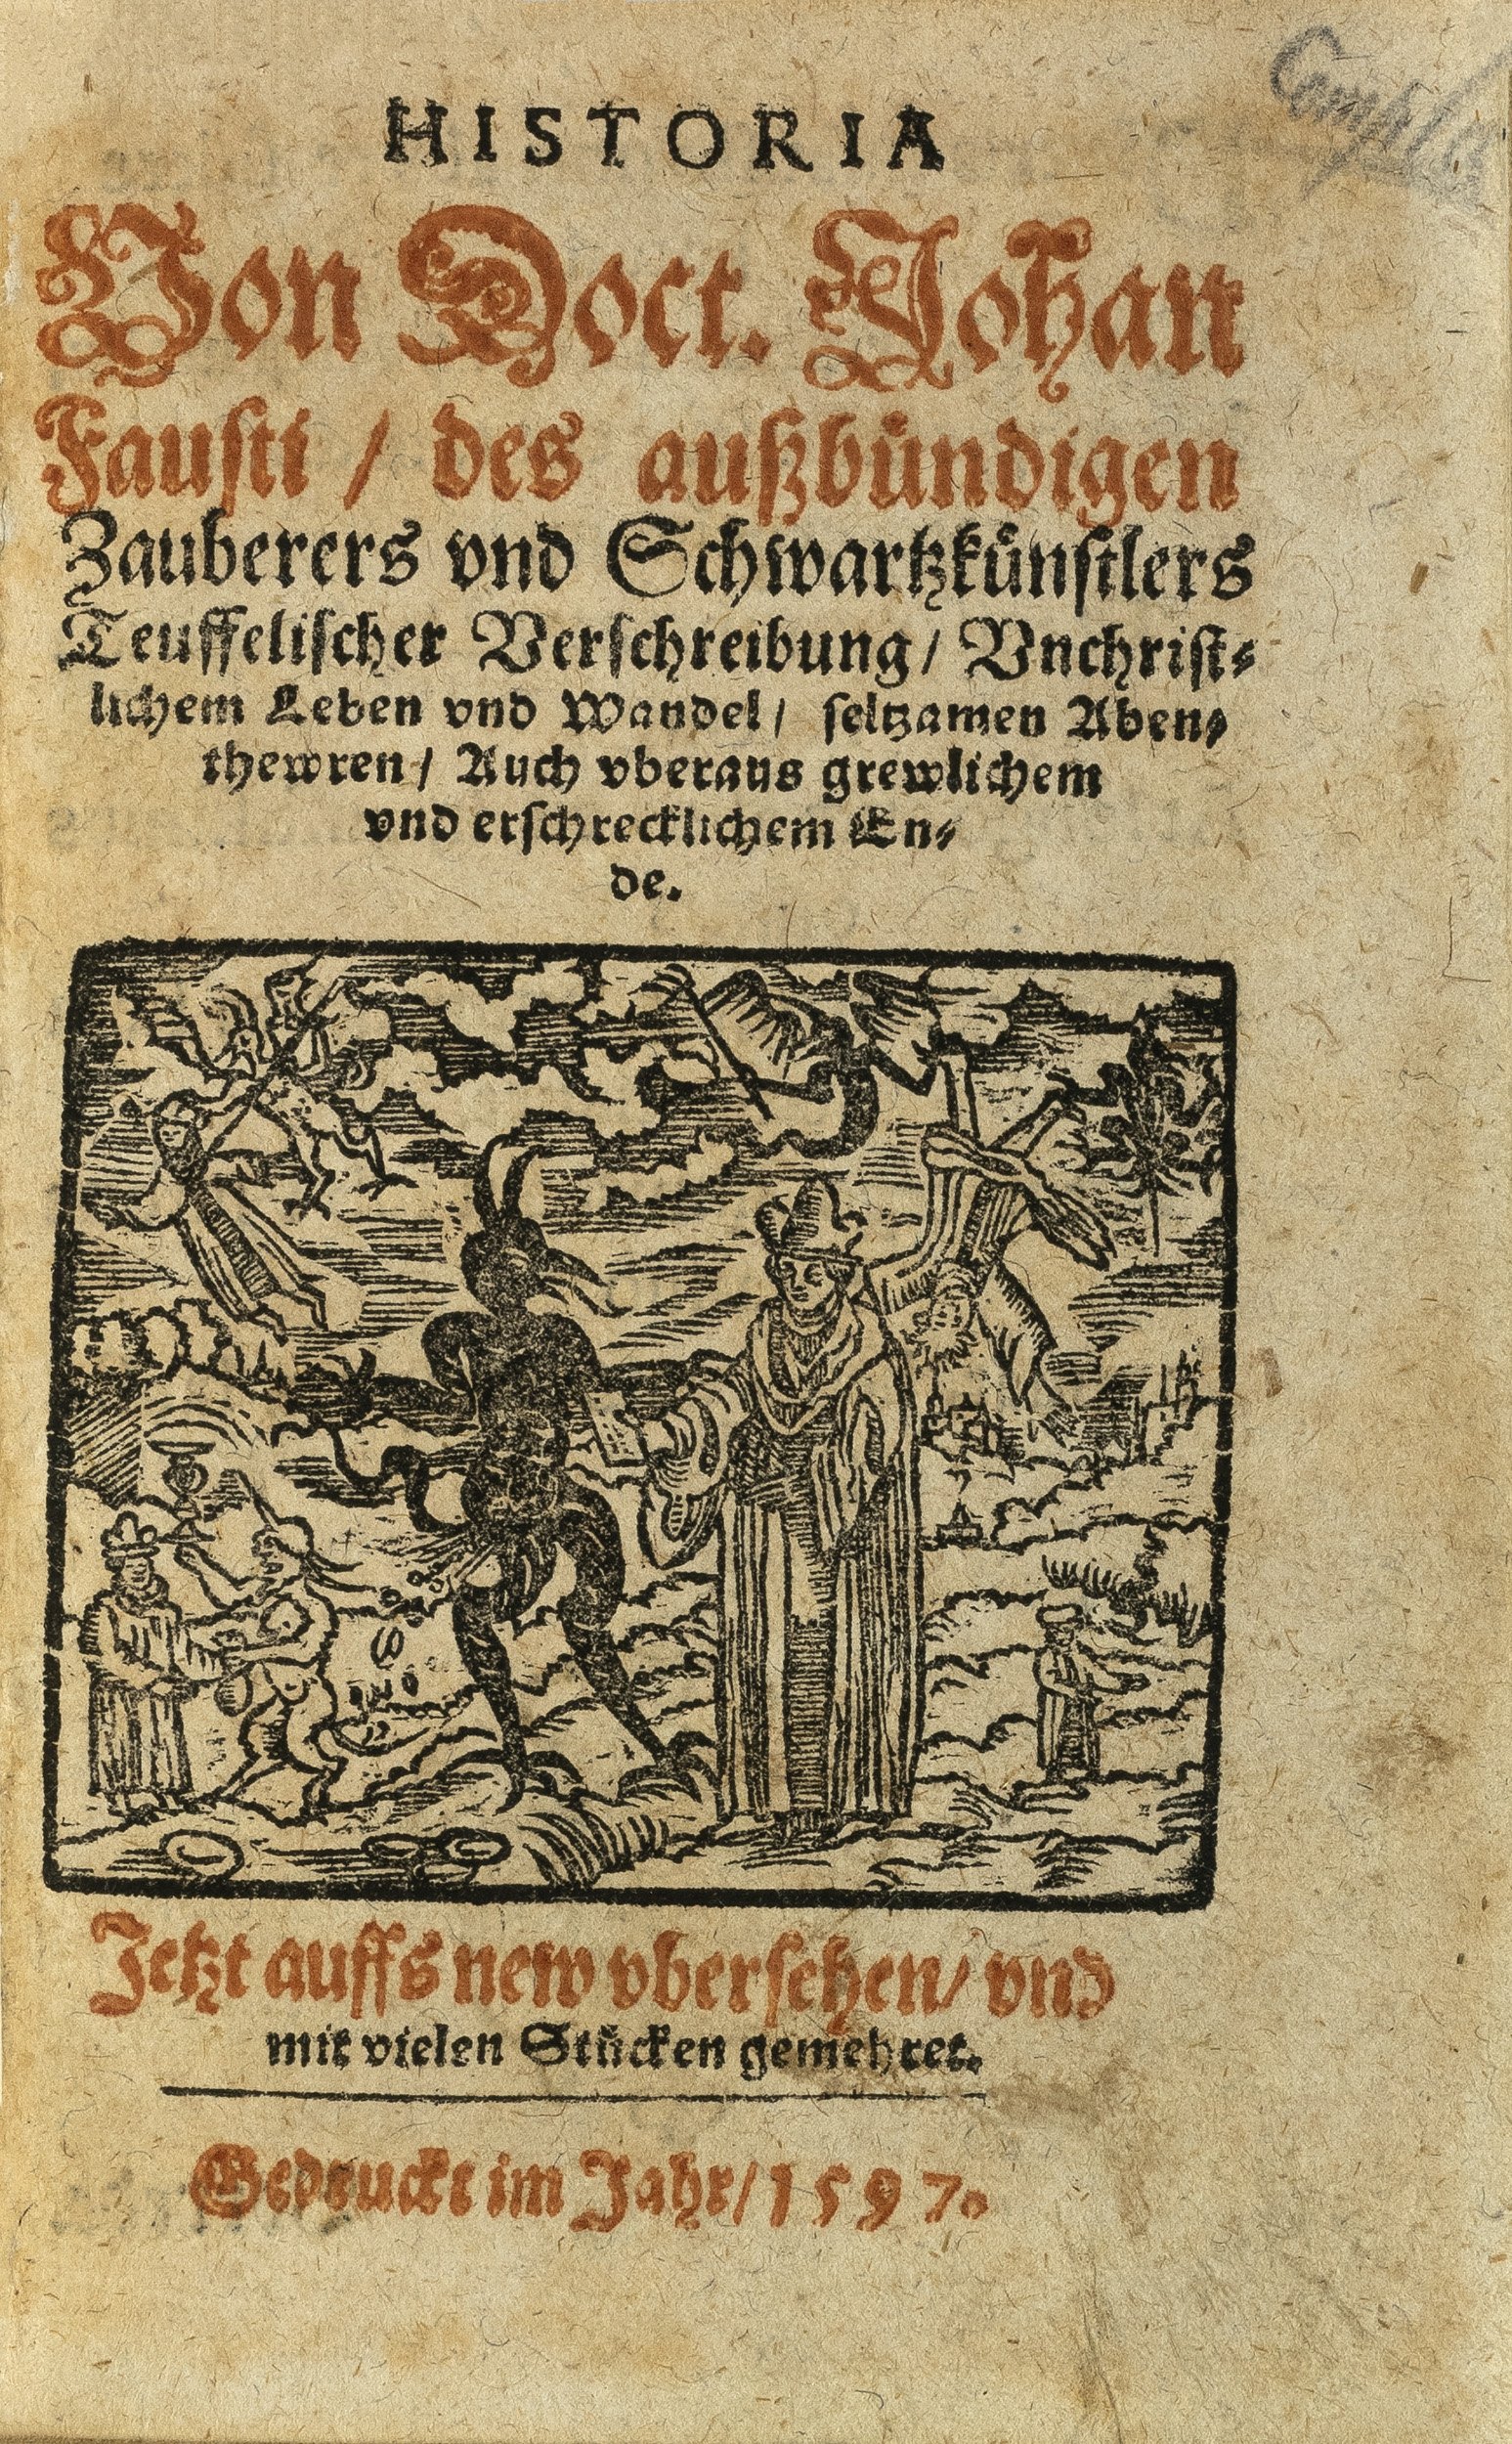 Dr.-Faust-historia-Wagner-1589-1597-1596-unica-rarissimum-2.jpg